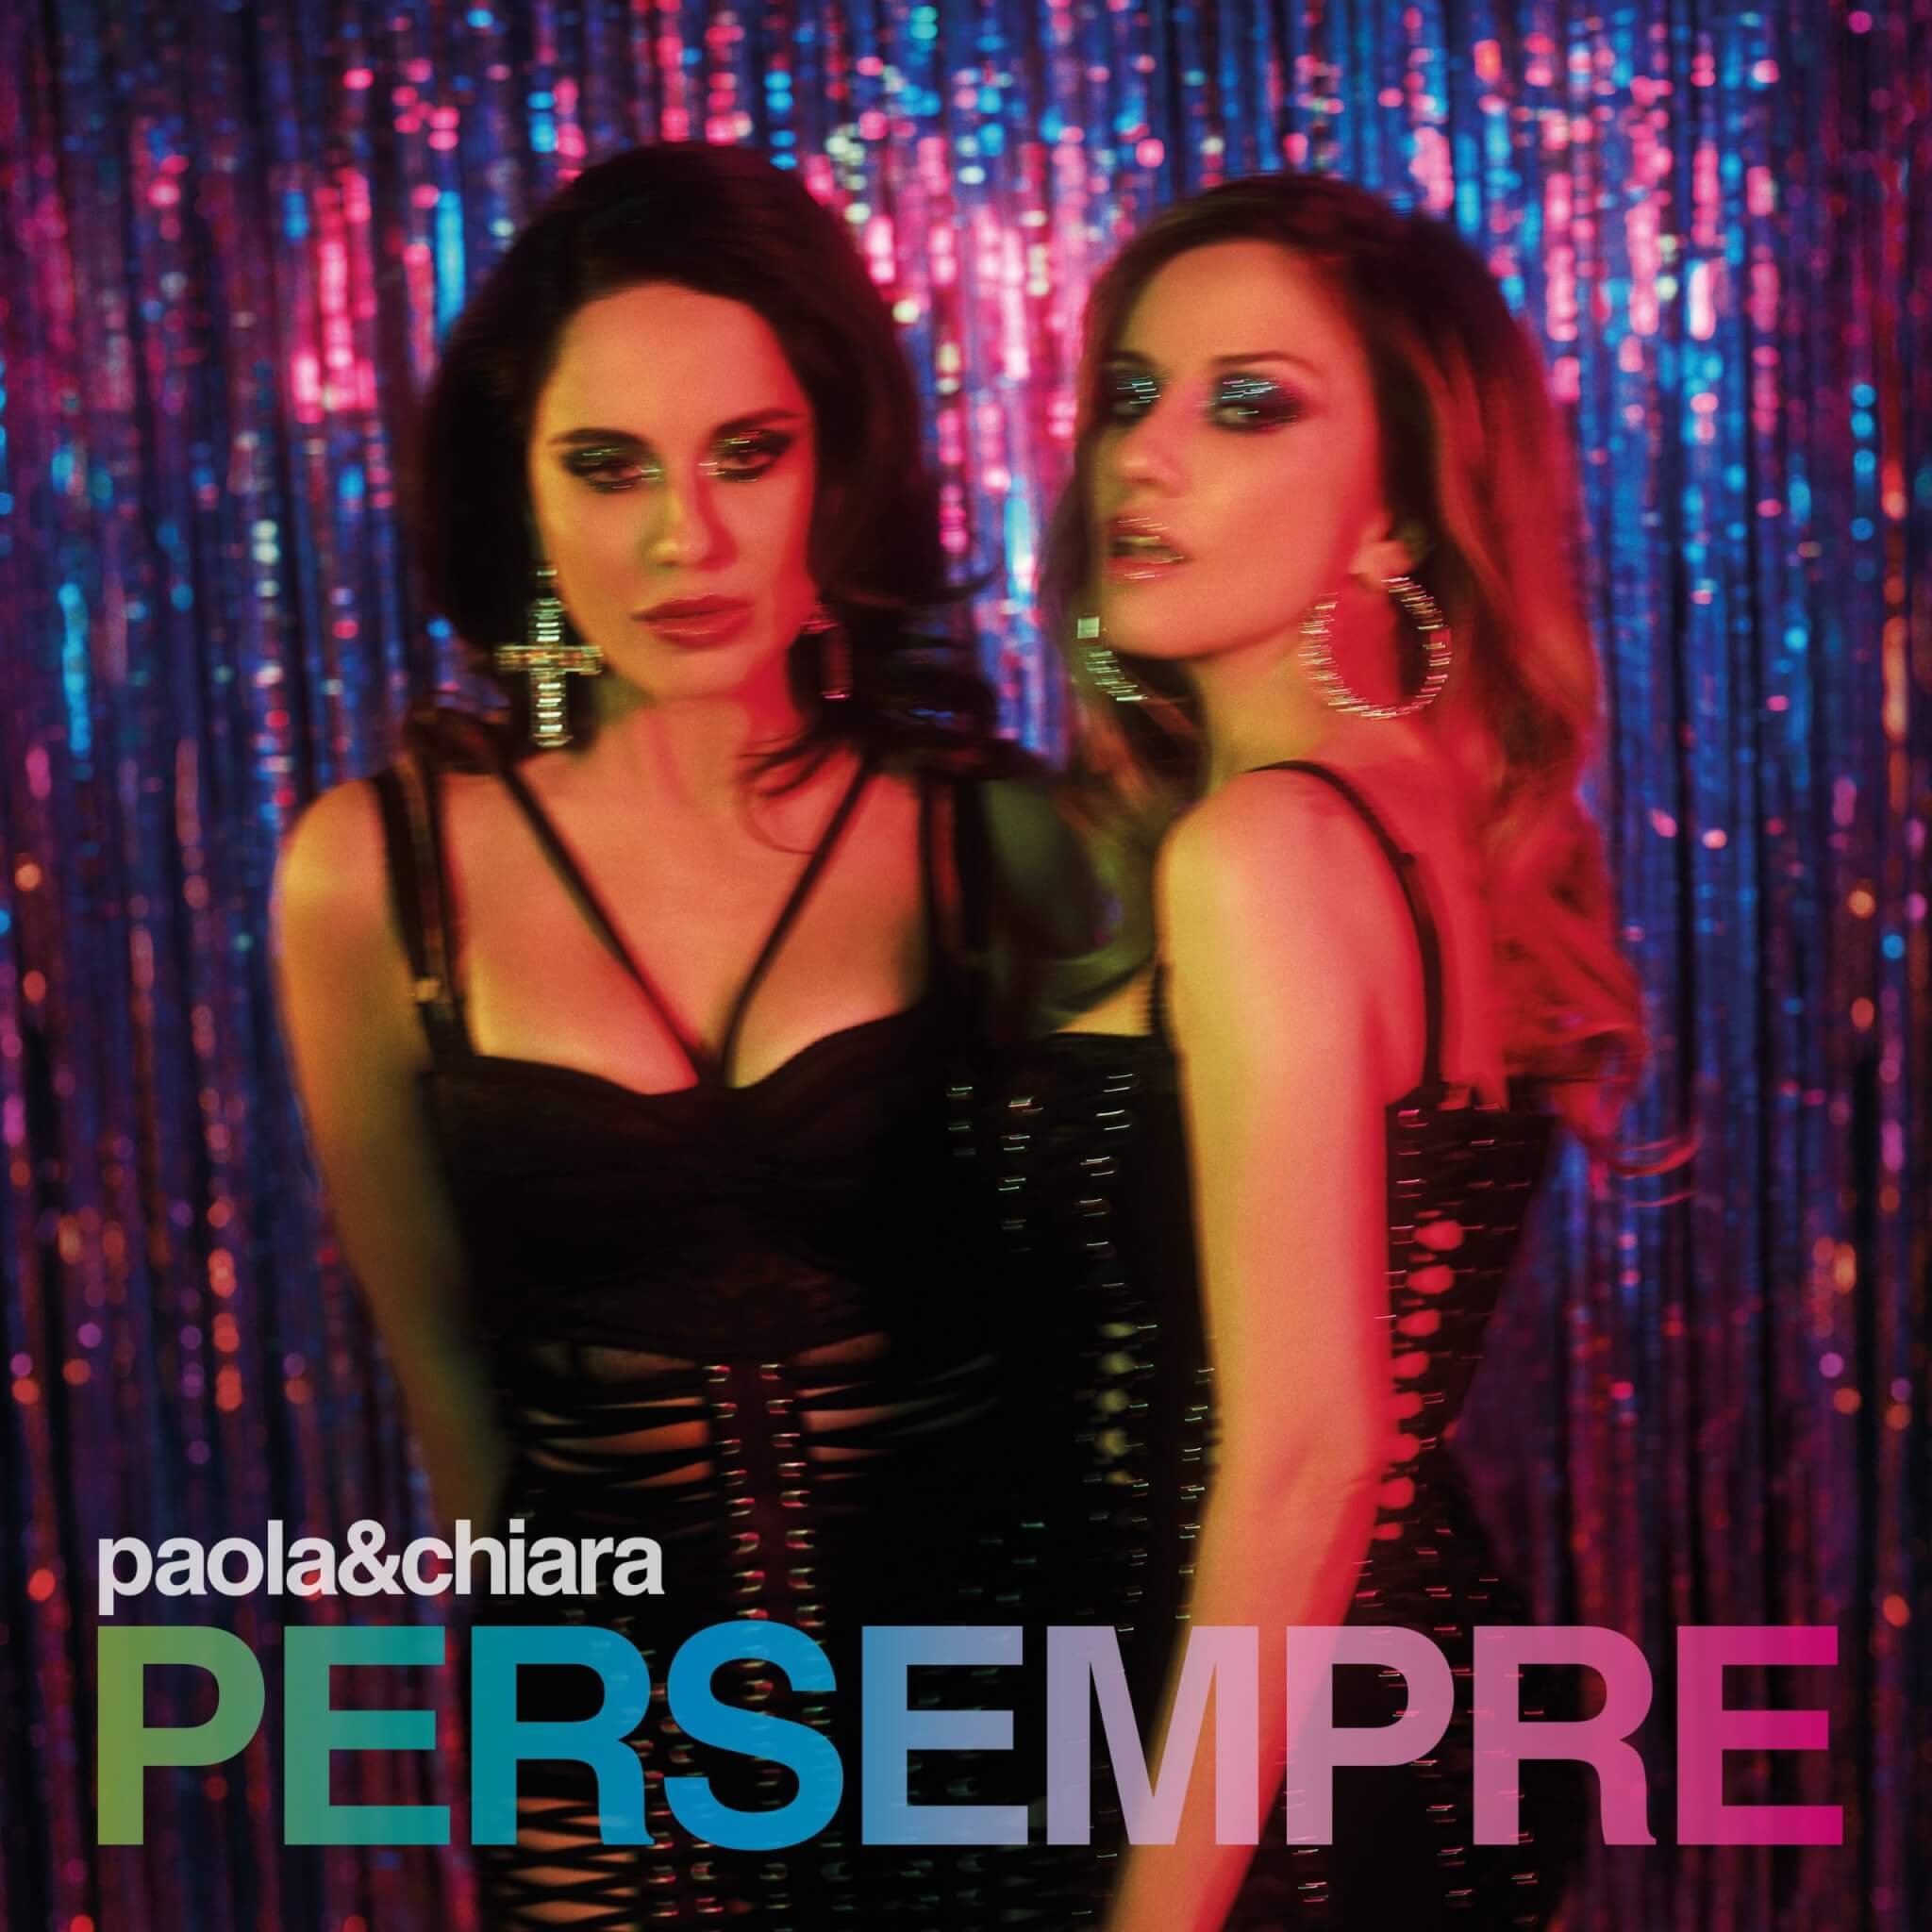 Paola & Chiara presentano l'album Per Sempre: “Le cose inaspettate sono le più belle nella vita” - Per Sempre il nuovo disco di Paola e Chiara 23 scaled - Gay.it